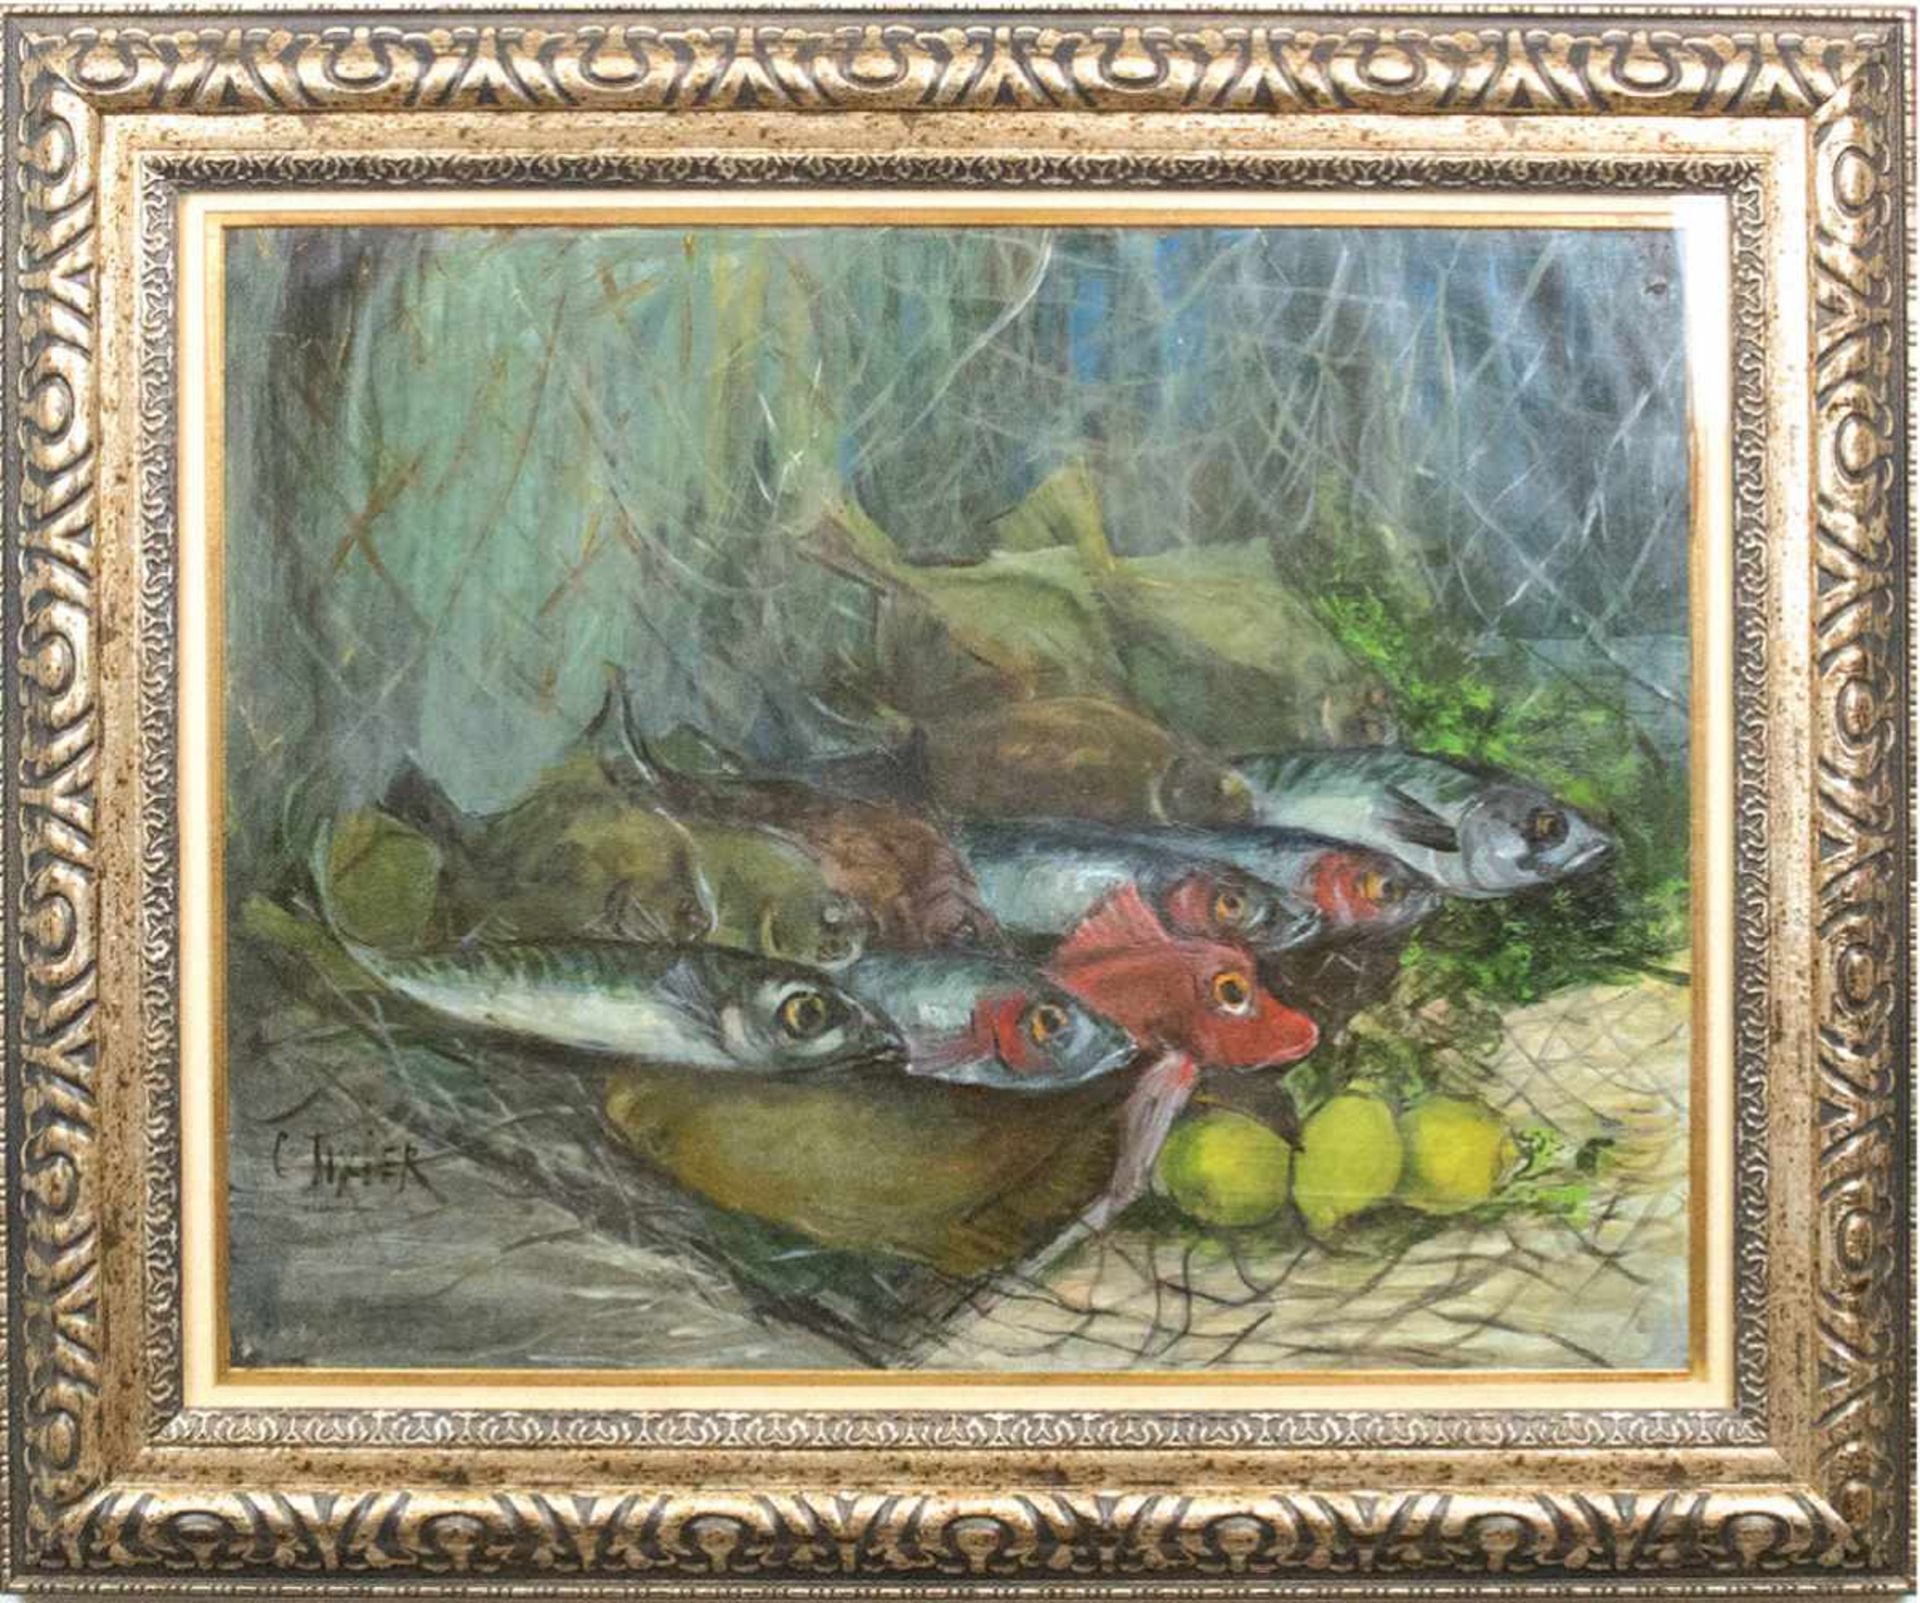 Tixier (Franz. Maler frühes 20. Jh.) "Fischstilleben", Öl/Papier, sign. u.l., 50x64 cm,hinter Glas